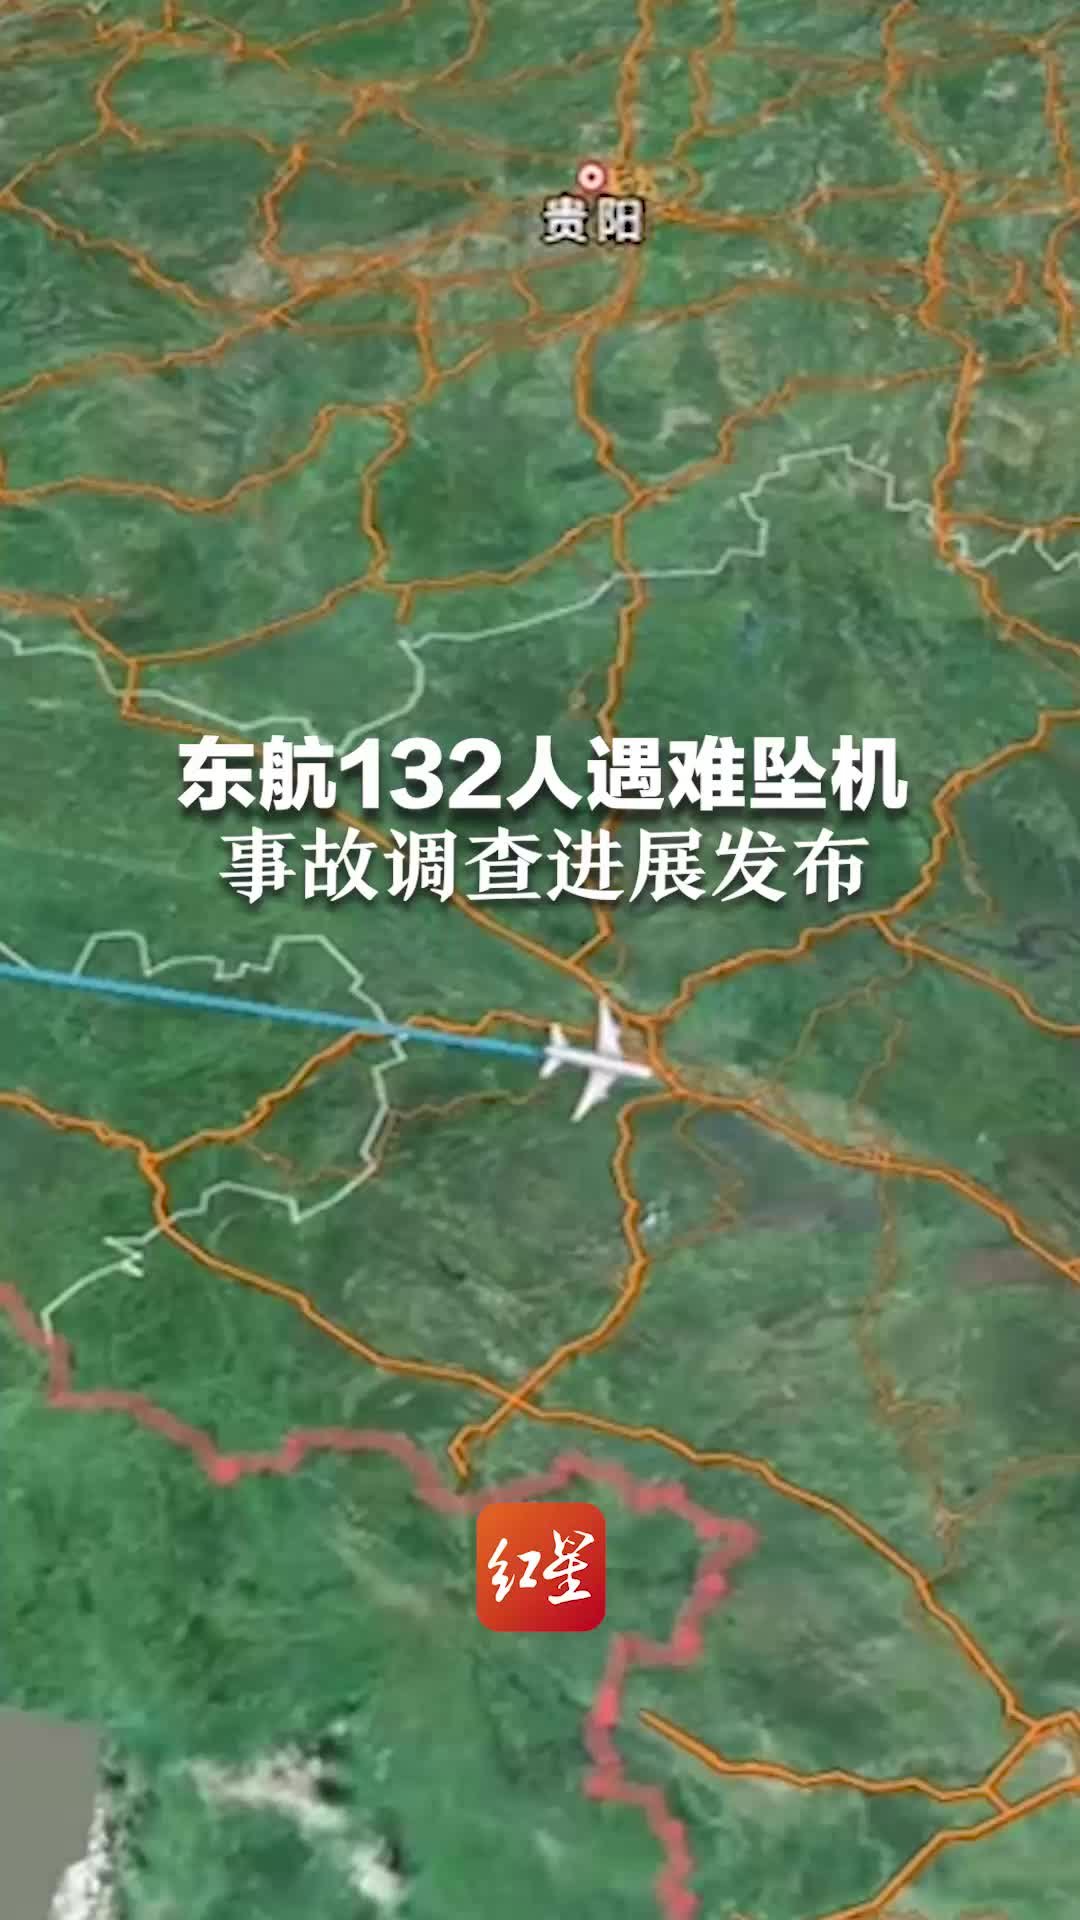 东航132人遇难坠机 事故调查进展发布